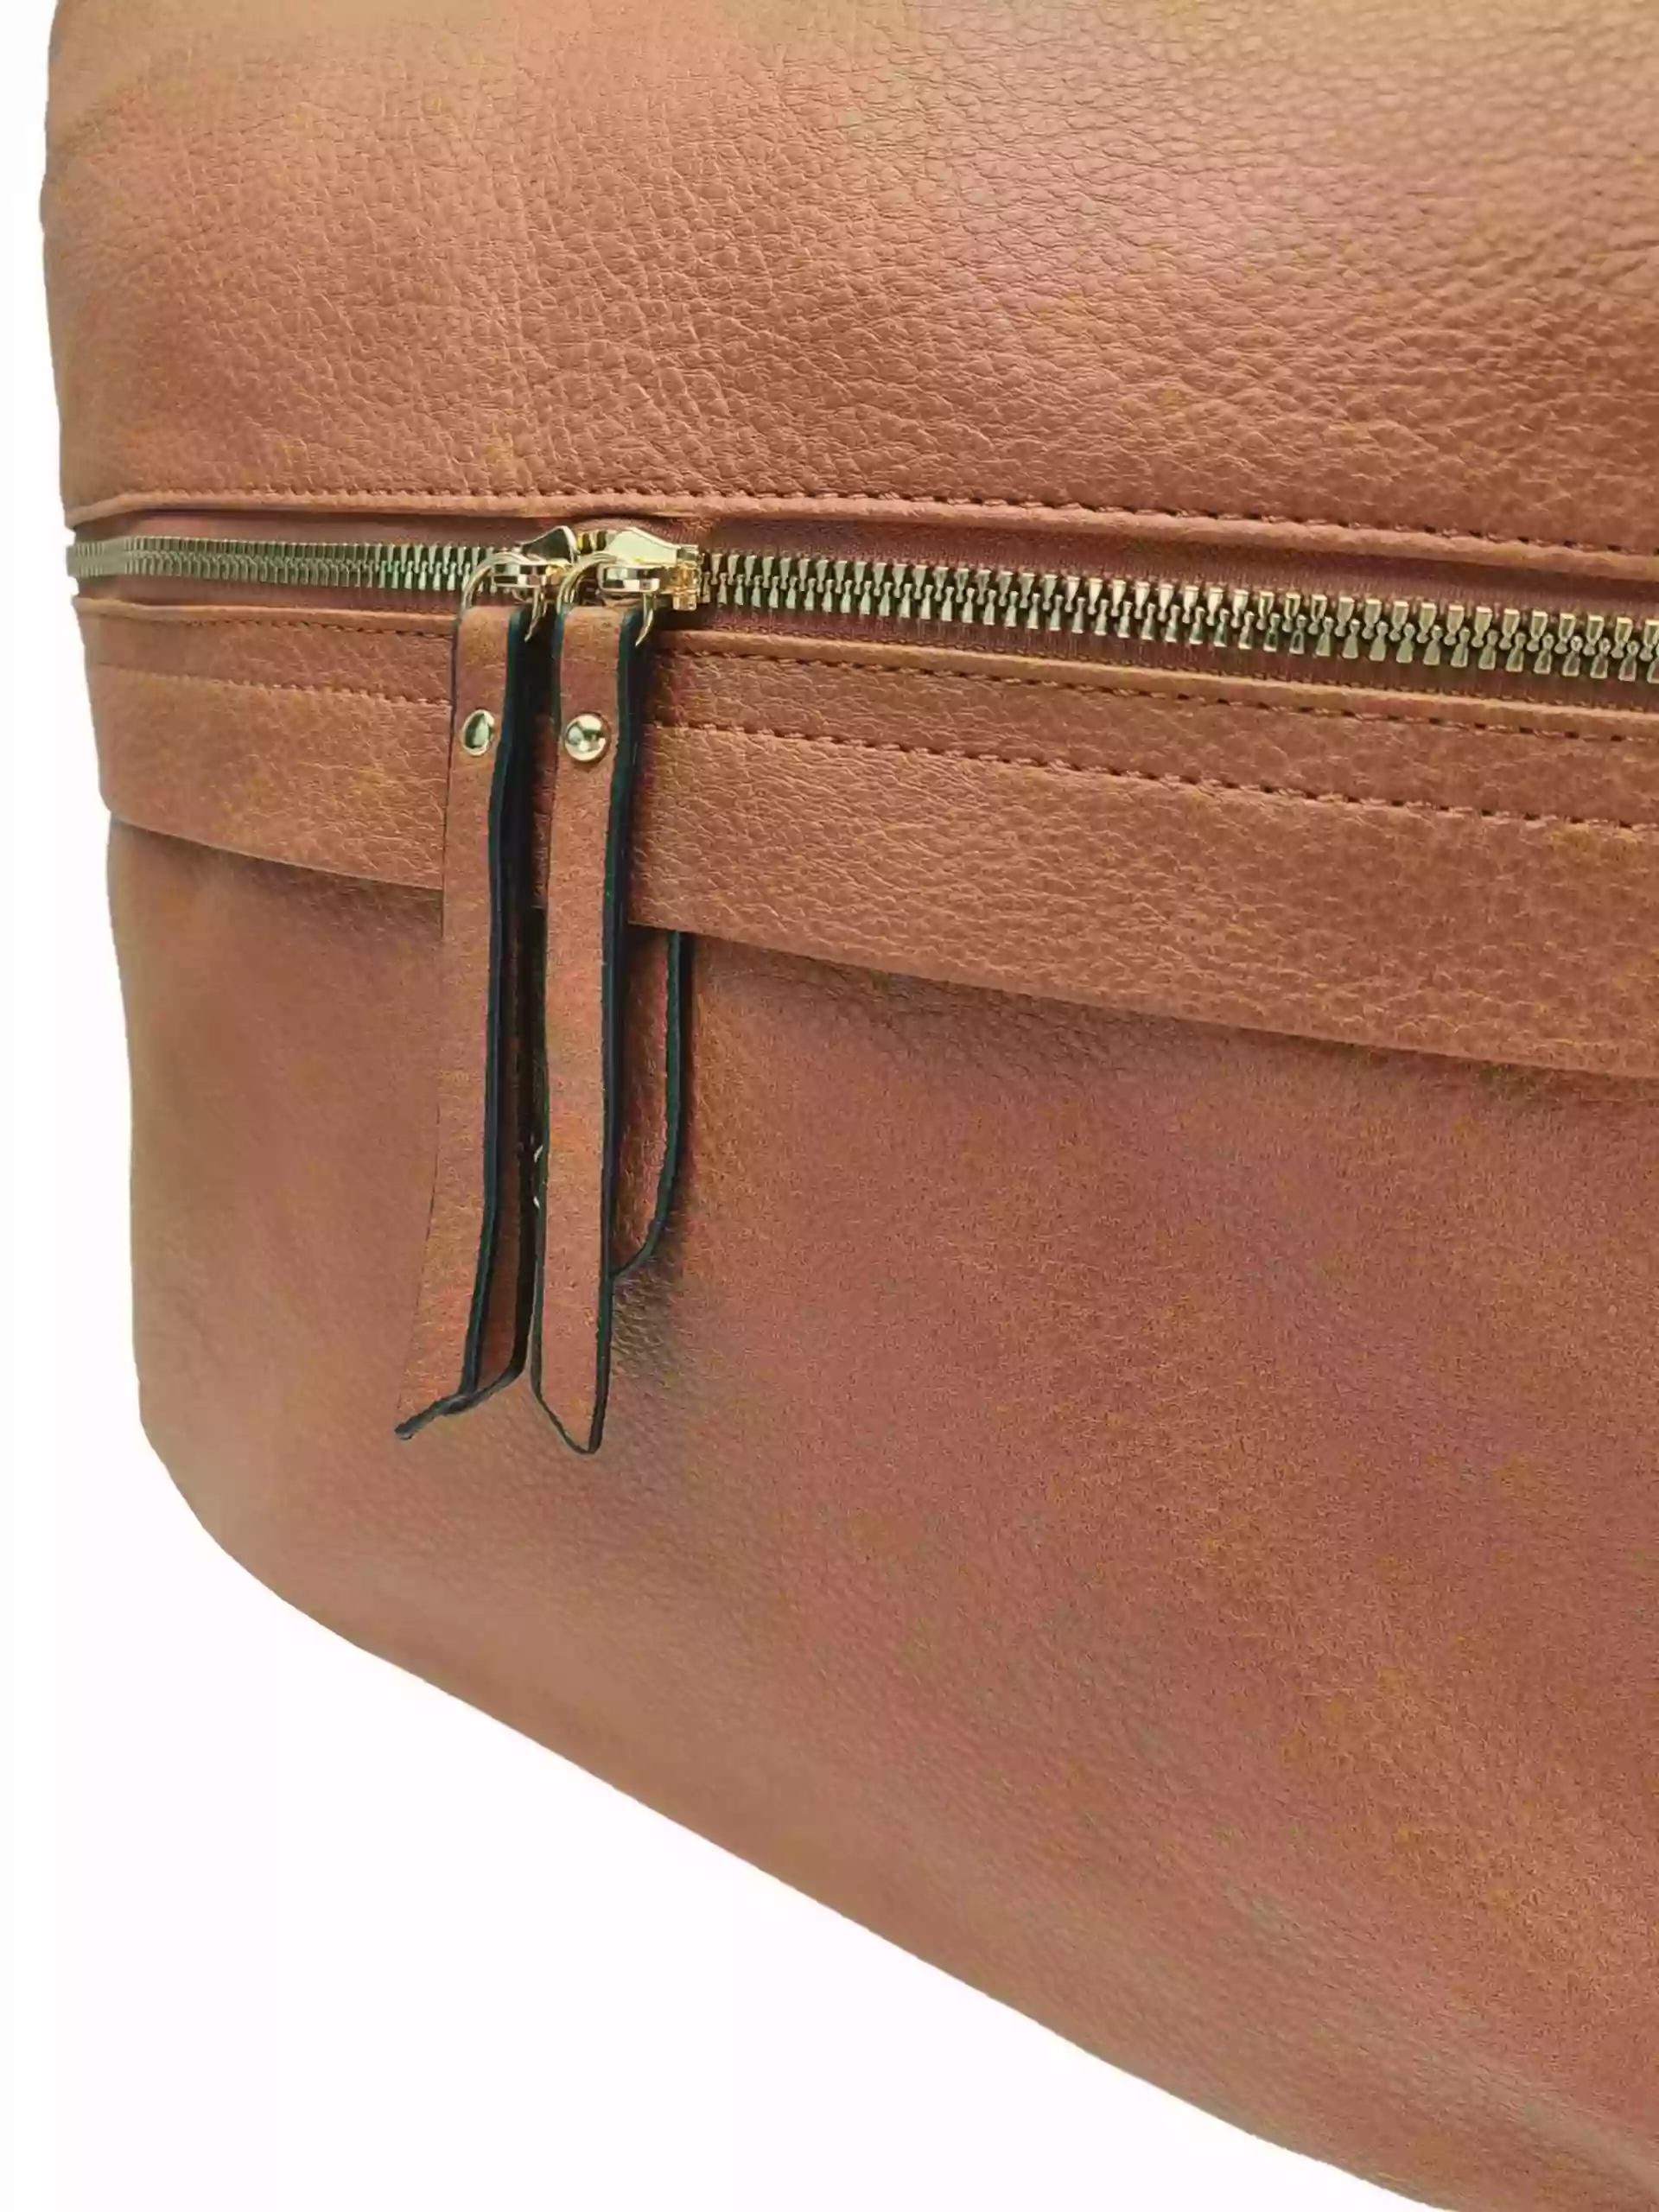 Velký středně hnědý kabelko-batoh 2v1 s kapsou, Int. Company, H23, detail kabelko-batohu